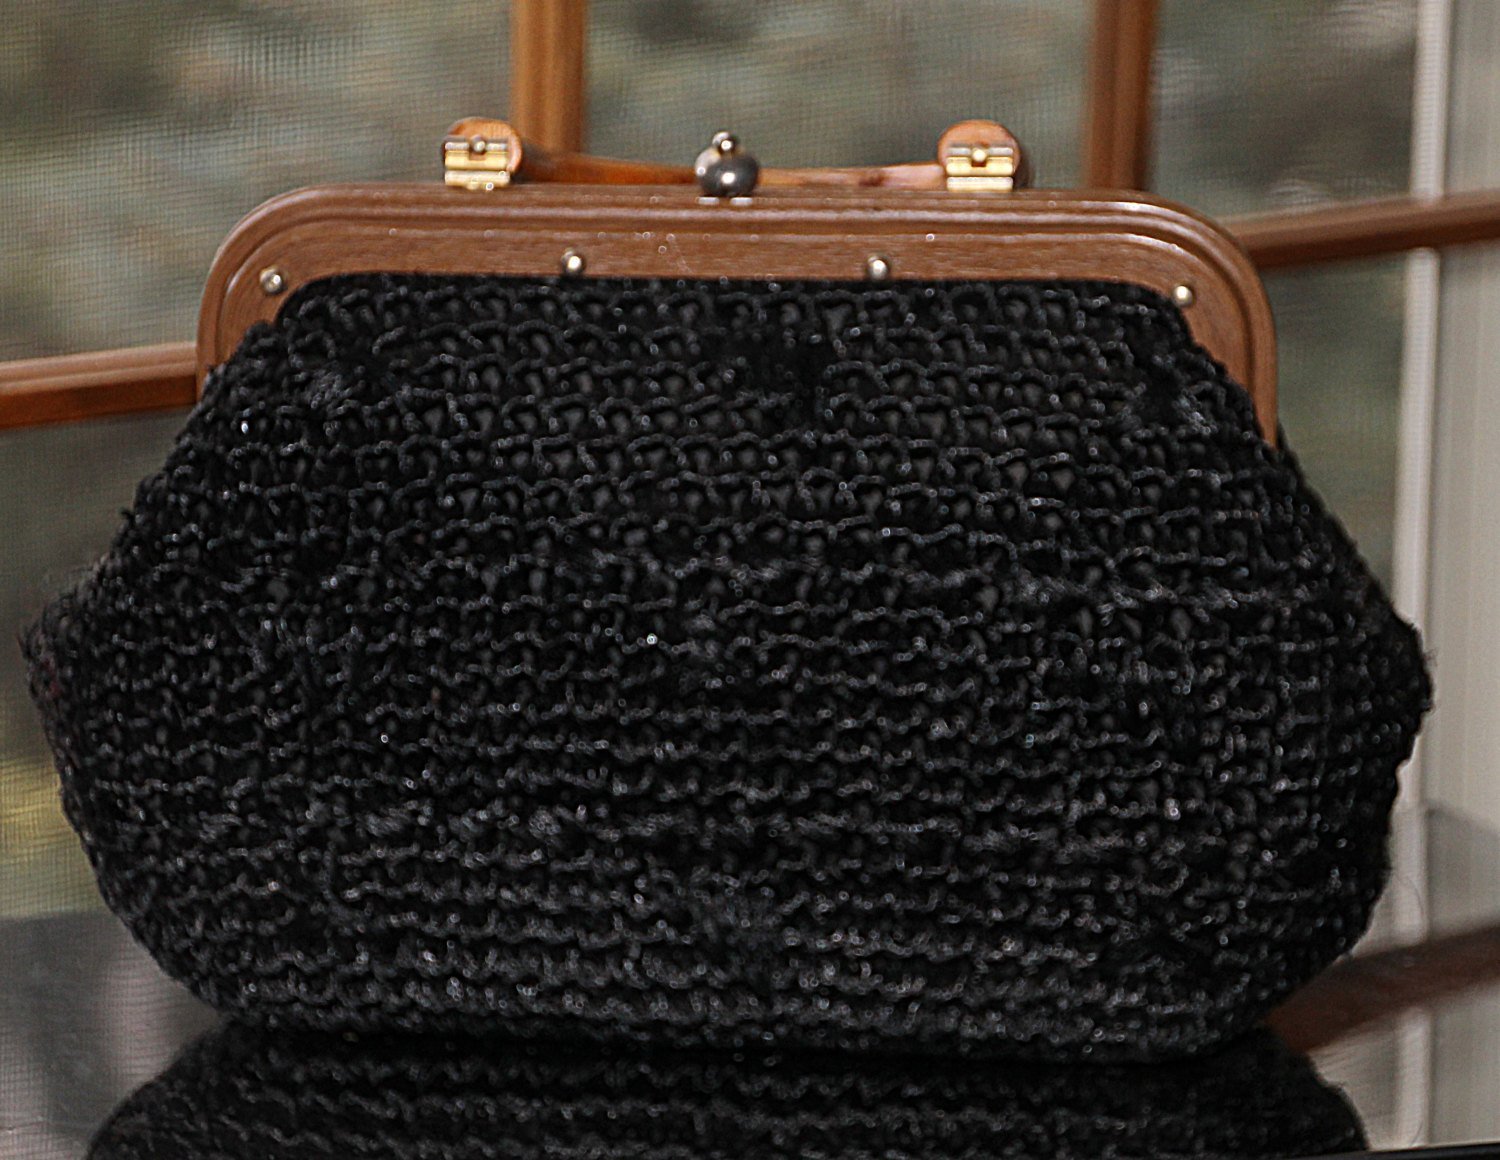 Crochet bucket bag: easy diy crochet bag with wooden handles - YouTube